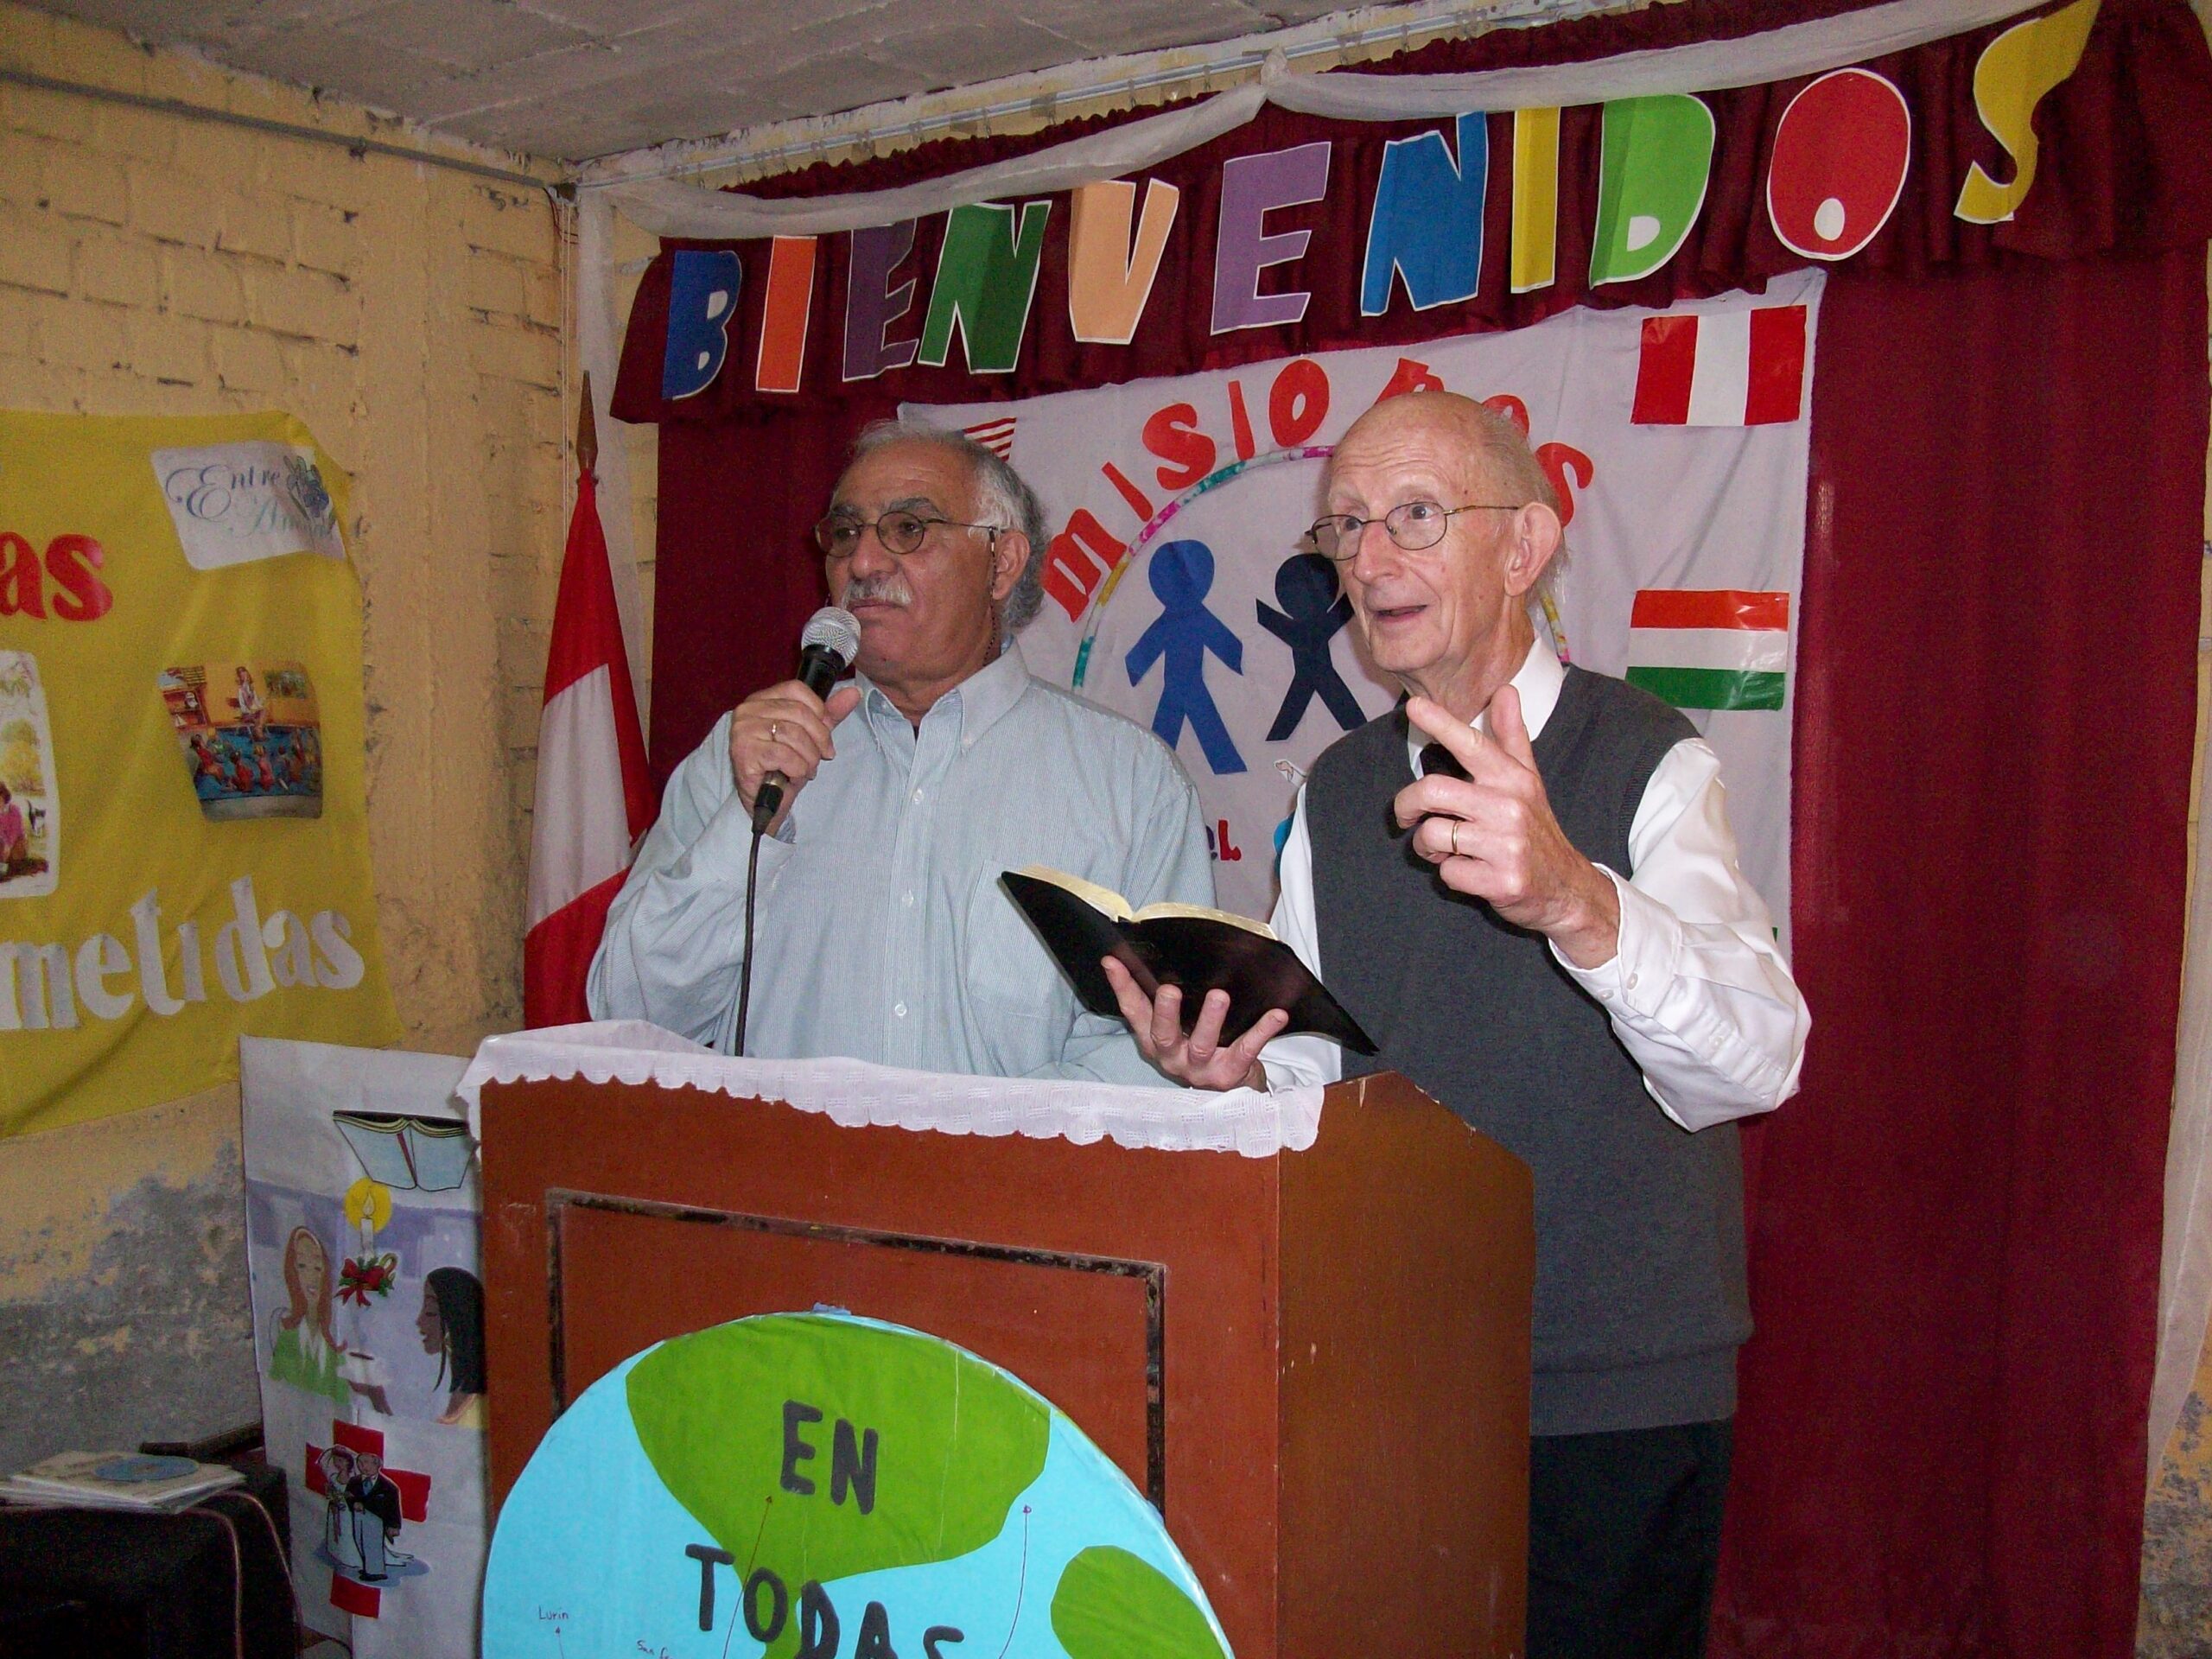 2009 Dave preaching in church in Peru